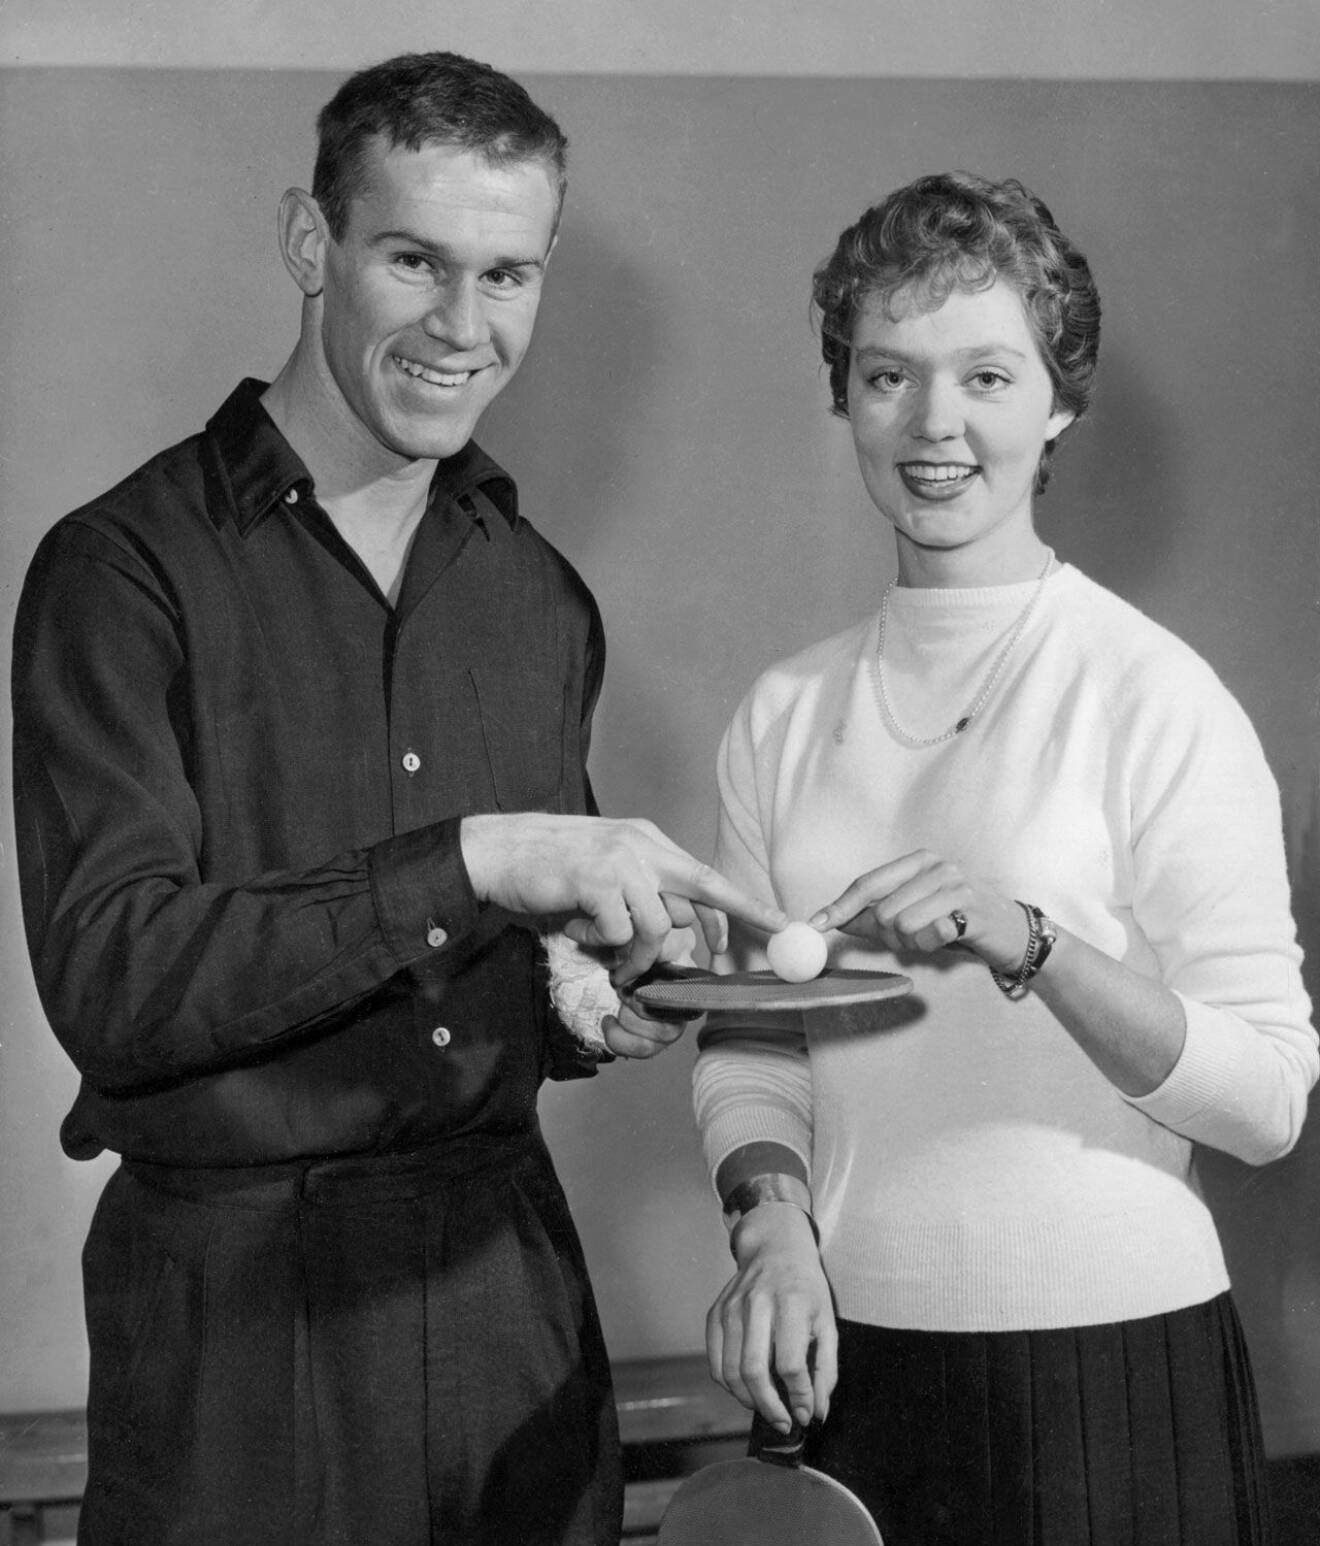 Prinsessan Birgitta med Sven Tumba, på den tiden de hade sin lilla romans. Sven och Mona gifte sig 1960 och Sven gick bort 2011.